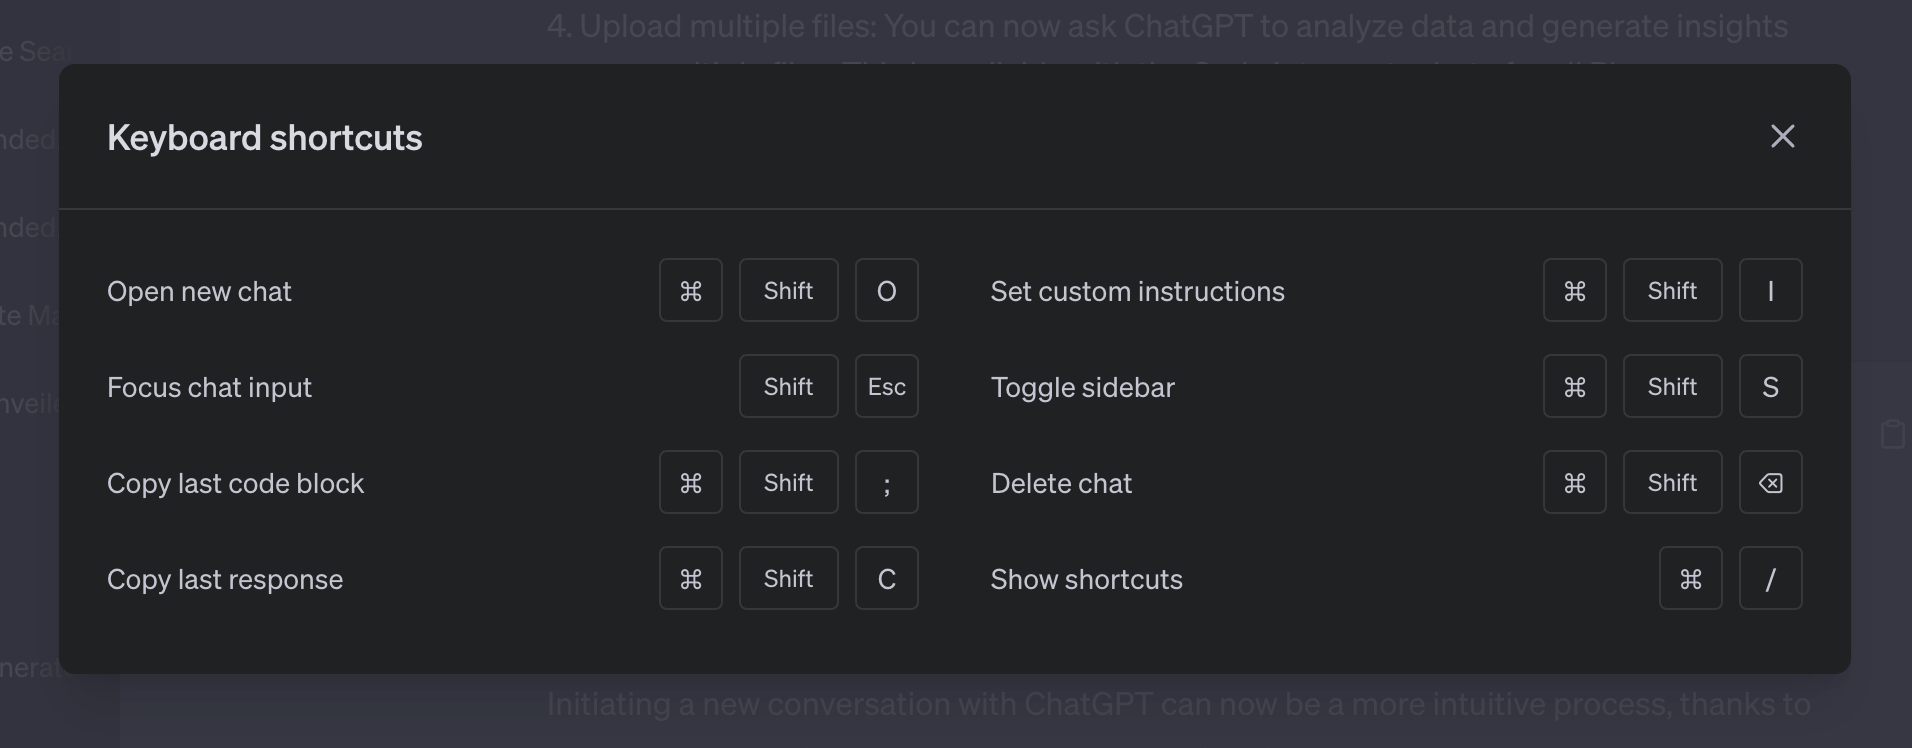 6 новых функций ChatGPT, включая образцы подсказок и загрузку файлов